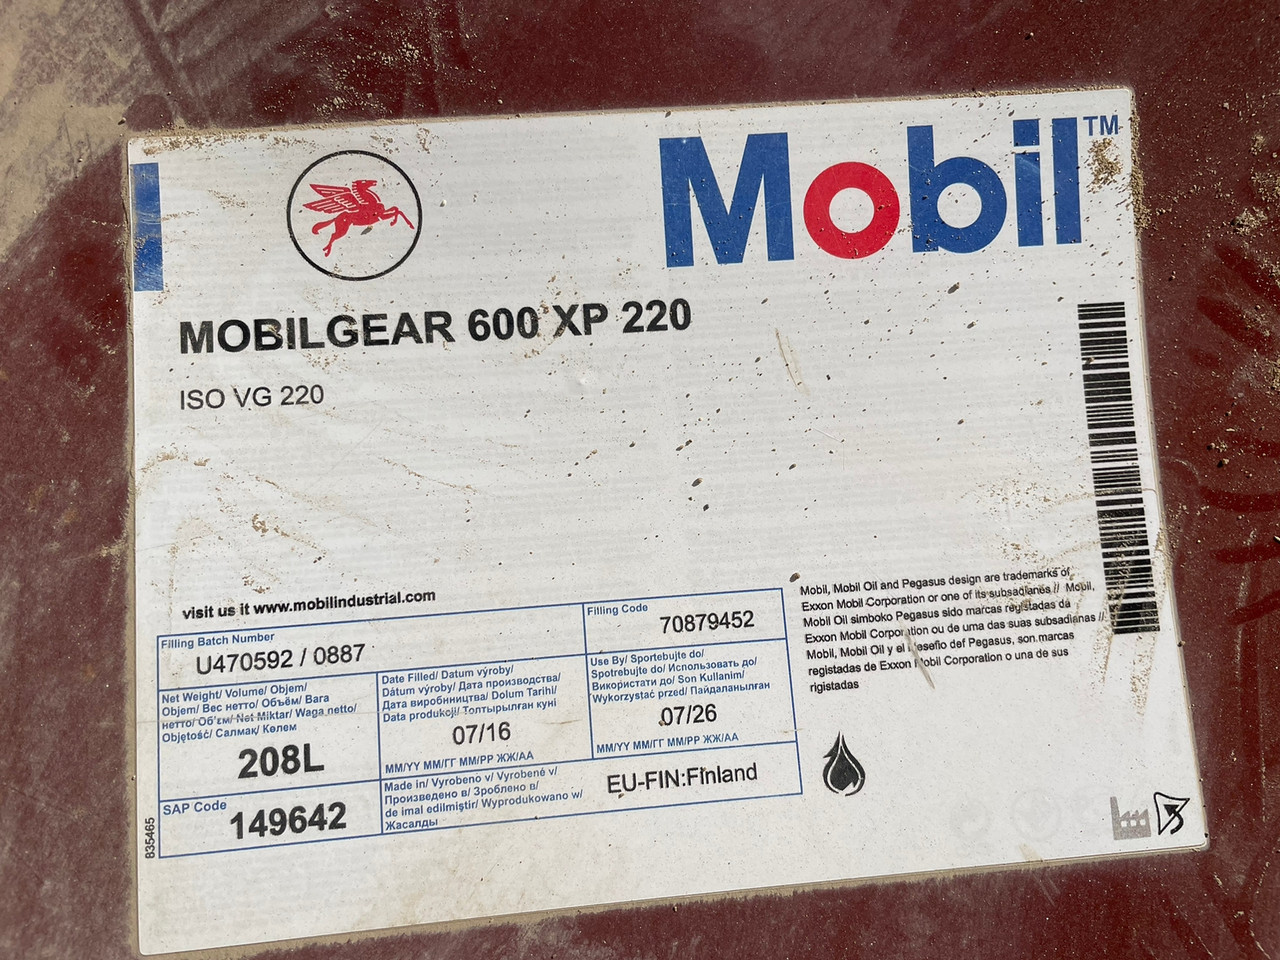 Срочно продаем!!!!!  MOBILGEAR 600 XP 220 Редукторное масло MOBIL 208L,  Finland, до 07/2026  - 1 шт.